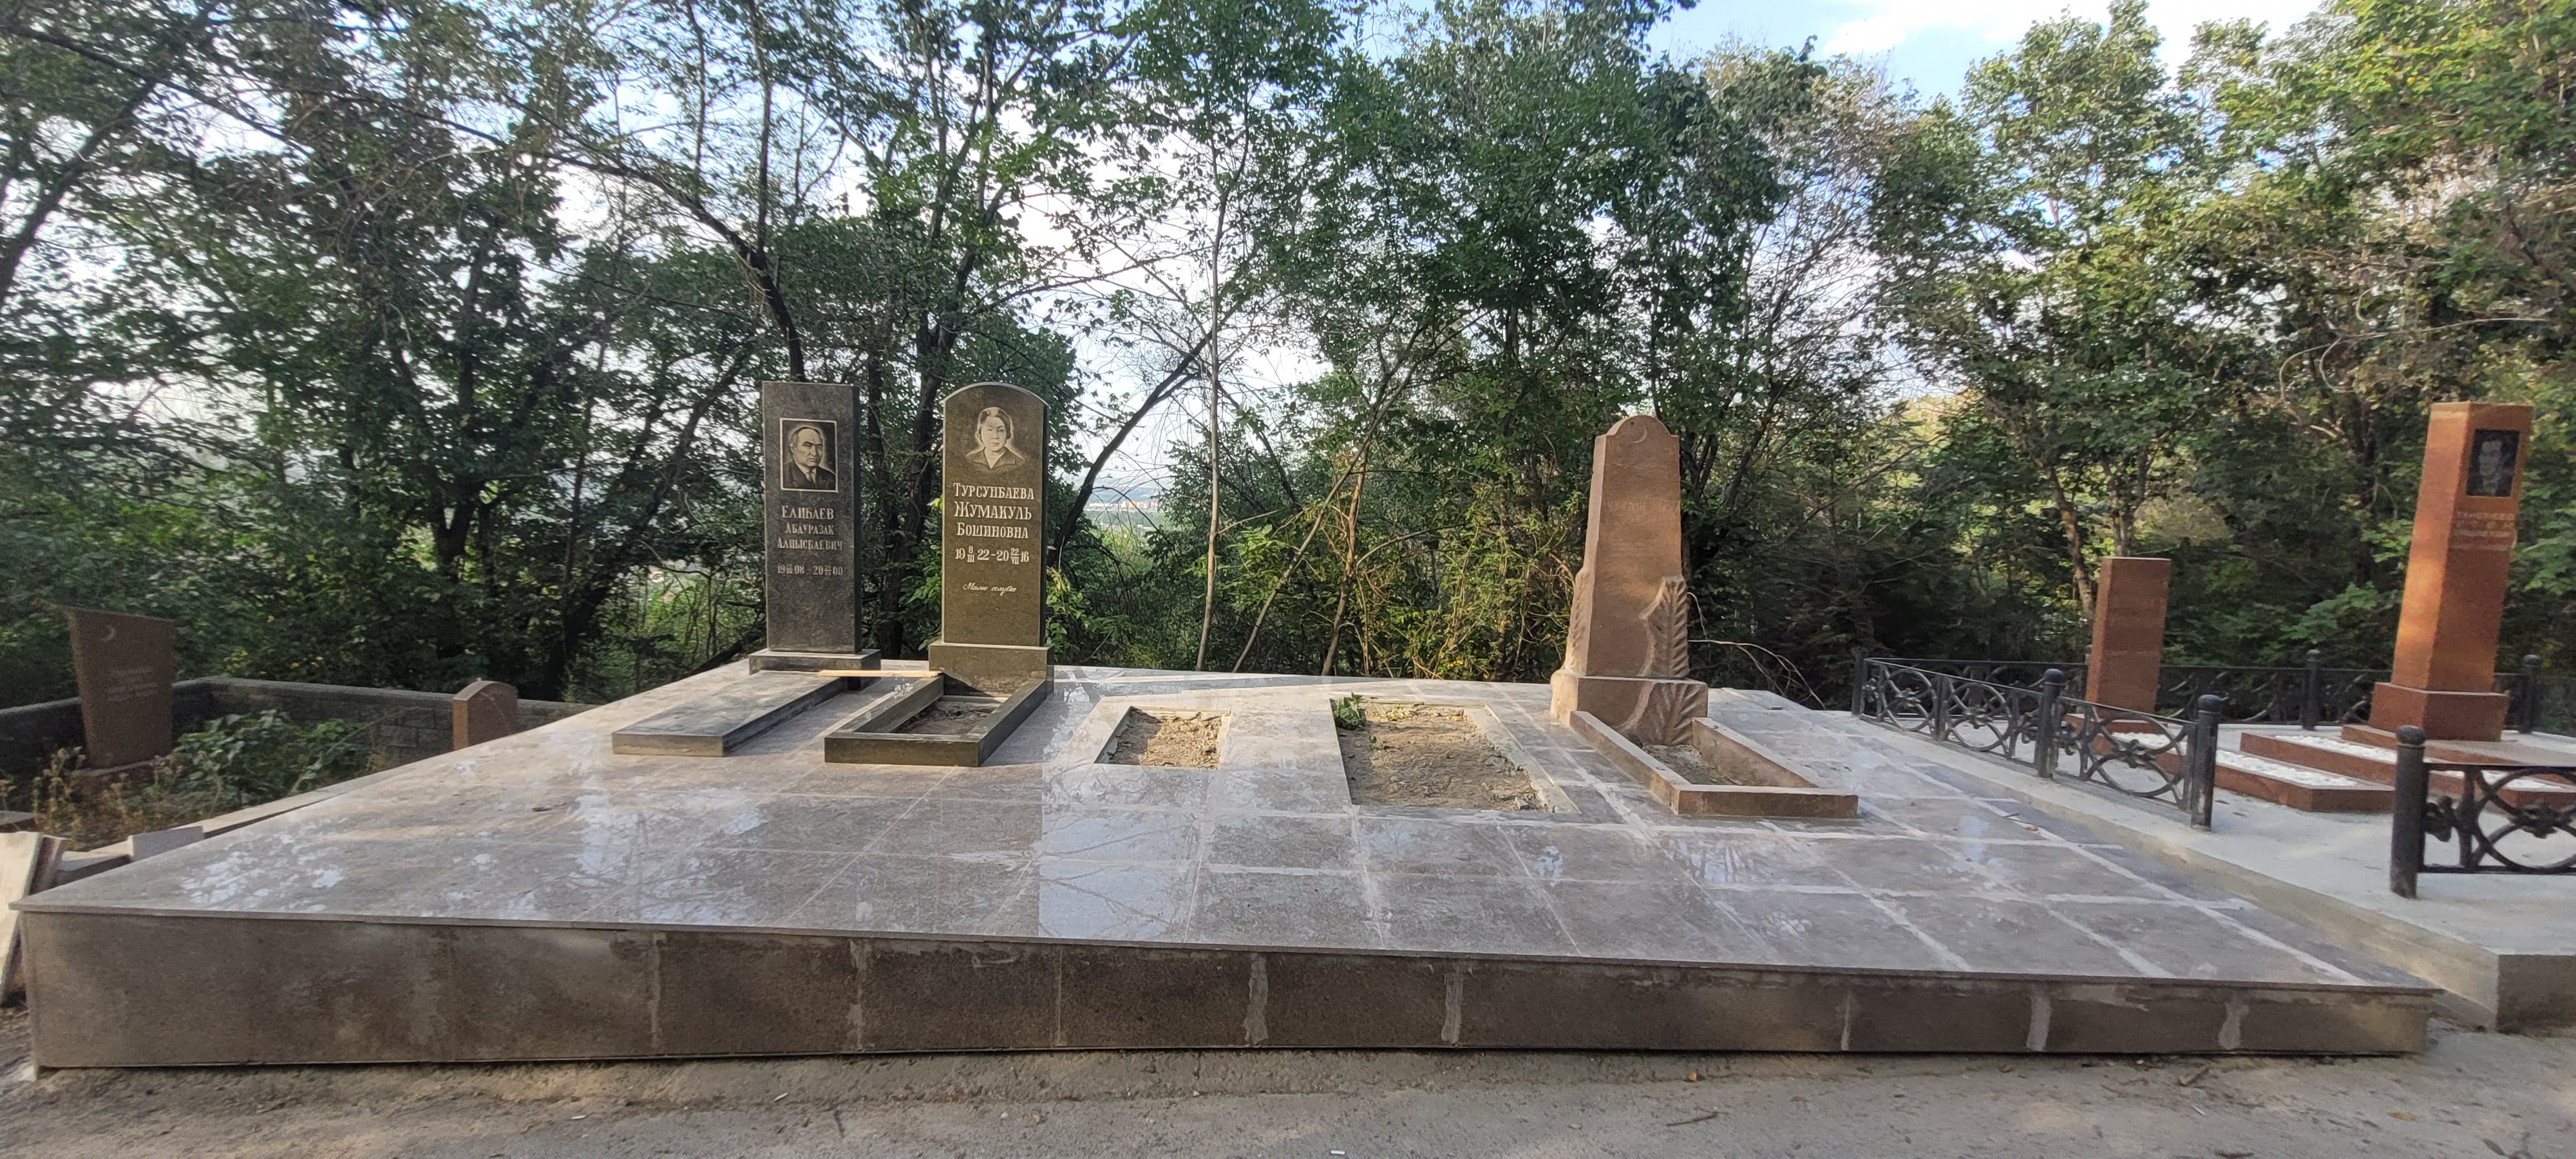 Ремонт надгробных памятников на кладбище в Алматы, процессе работы